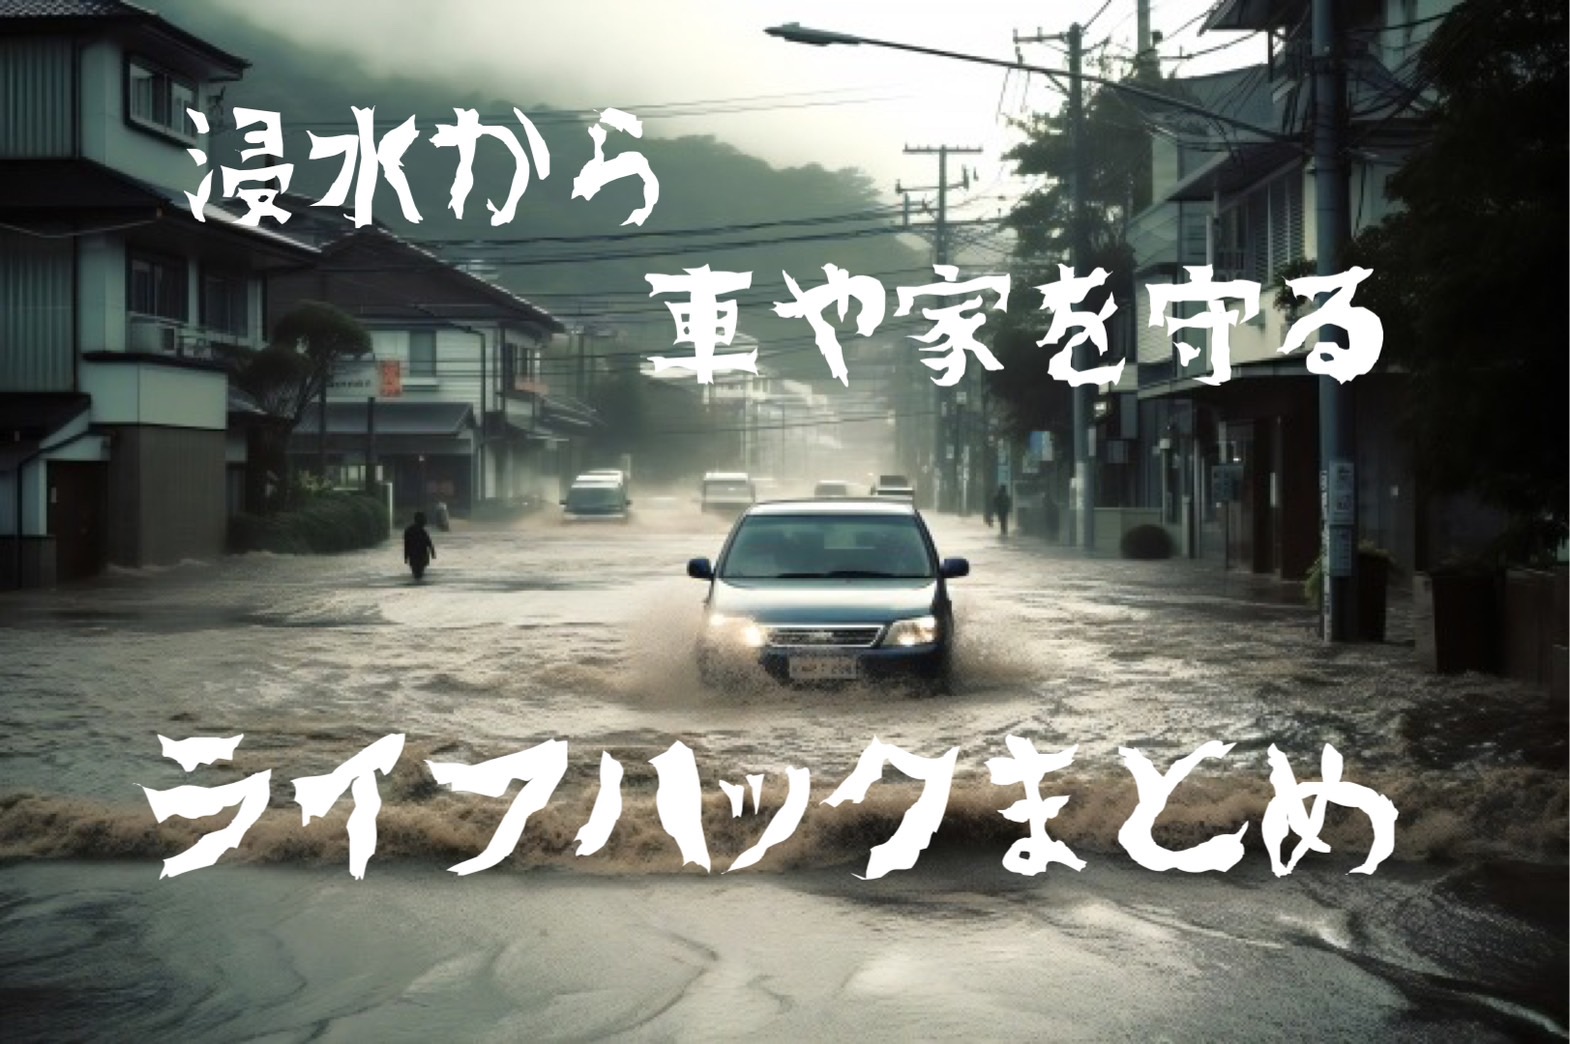 【保存版】大雨や台風による家や車への浸水被害を防ぐための対策まとめ